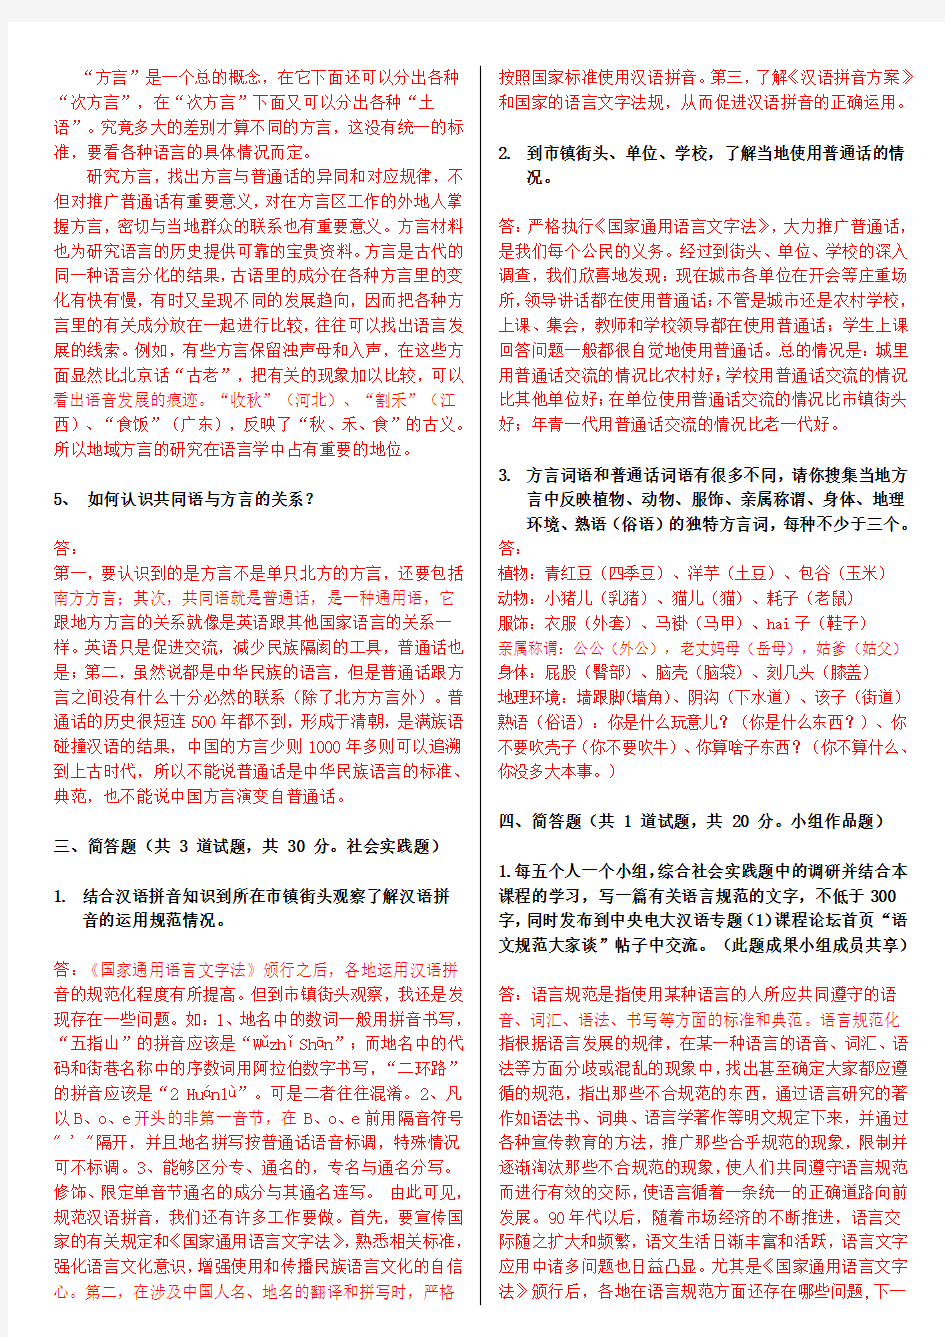 电大本科《现代汉语专题》形考作业任务0109网测验考试题及答案